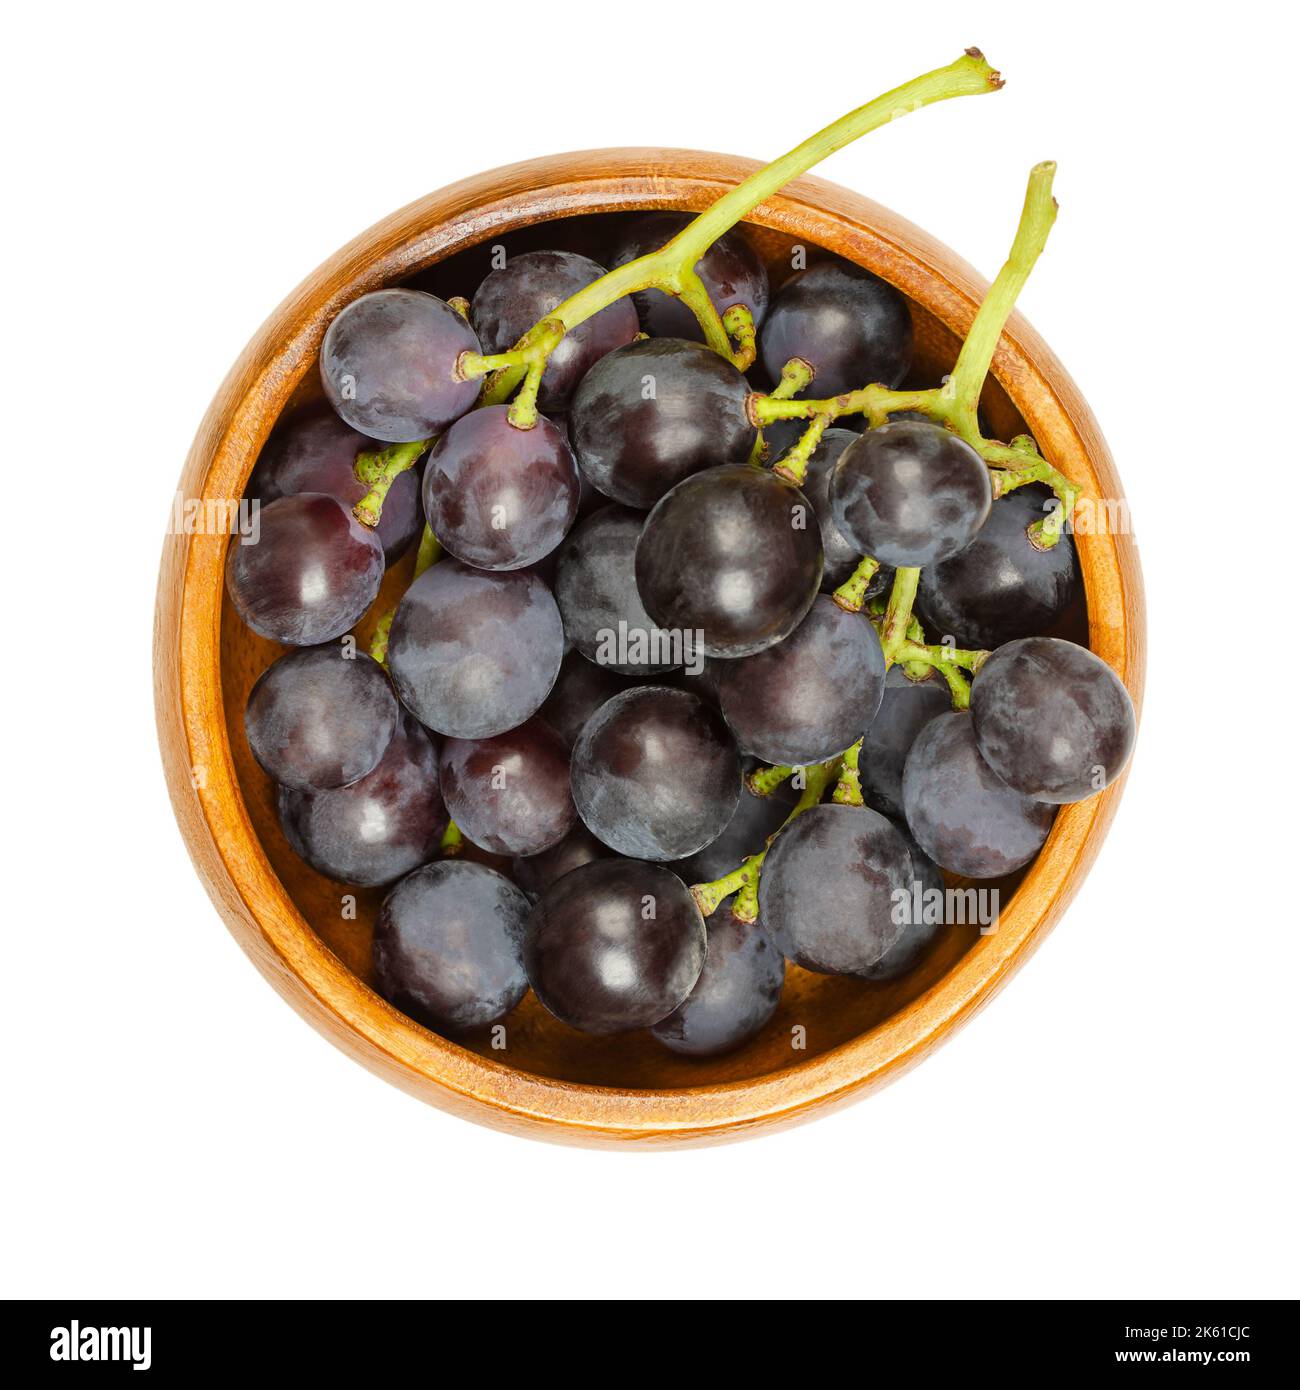 Vitigni comuni, in una ciotola di legno. Vitigni appena raccolti di uve selvatiche mature, Vitis vinifera, con piccole uve viola scuro. Foto Stock